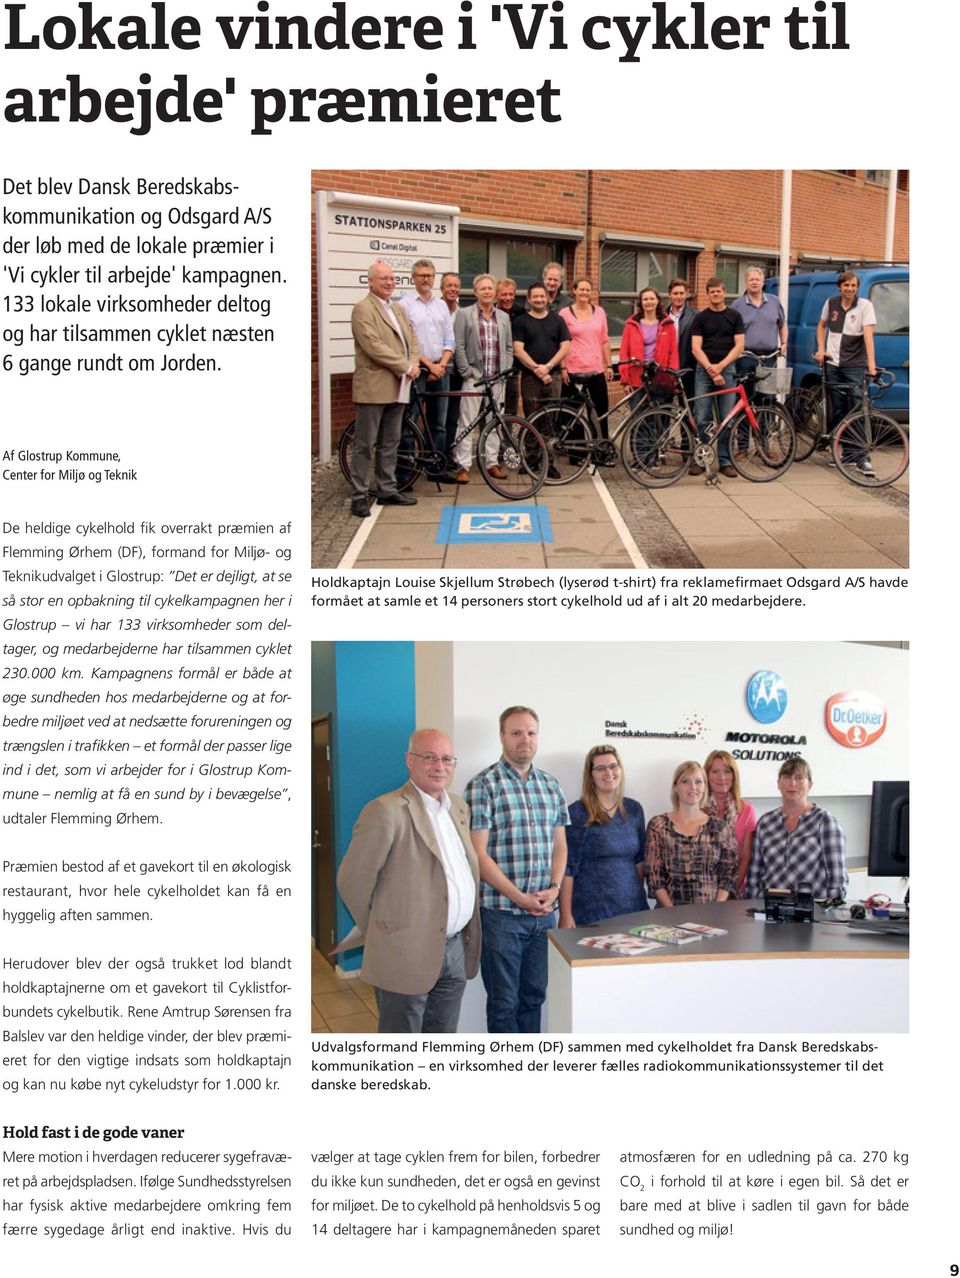 Af Glostrup Kommune, Center for Miljø og Teknik De heldige cykelhold fik overrakt præmien af Flemming Ørhem (DF), formand for Miljø- og Teknikudvalget i Glostrup: Det er dejligt, at se så stor en